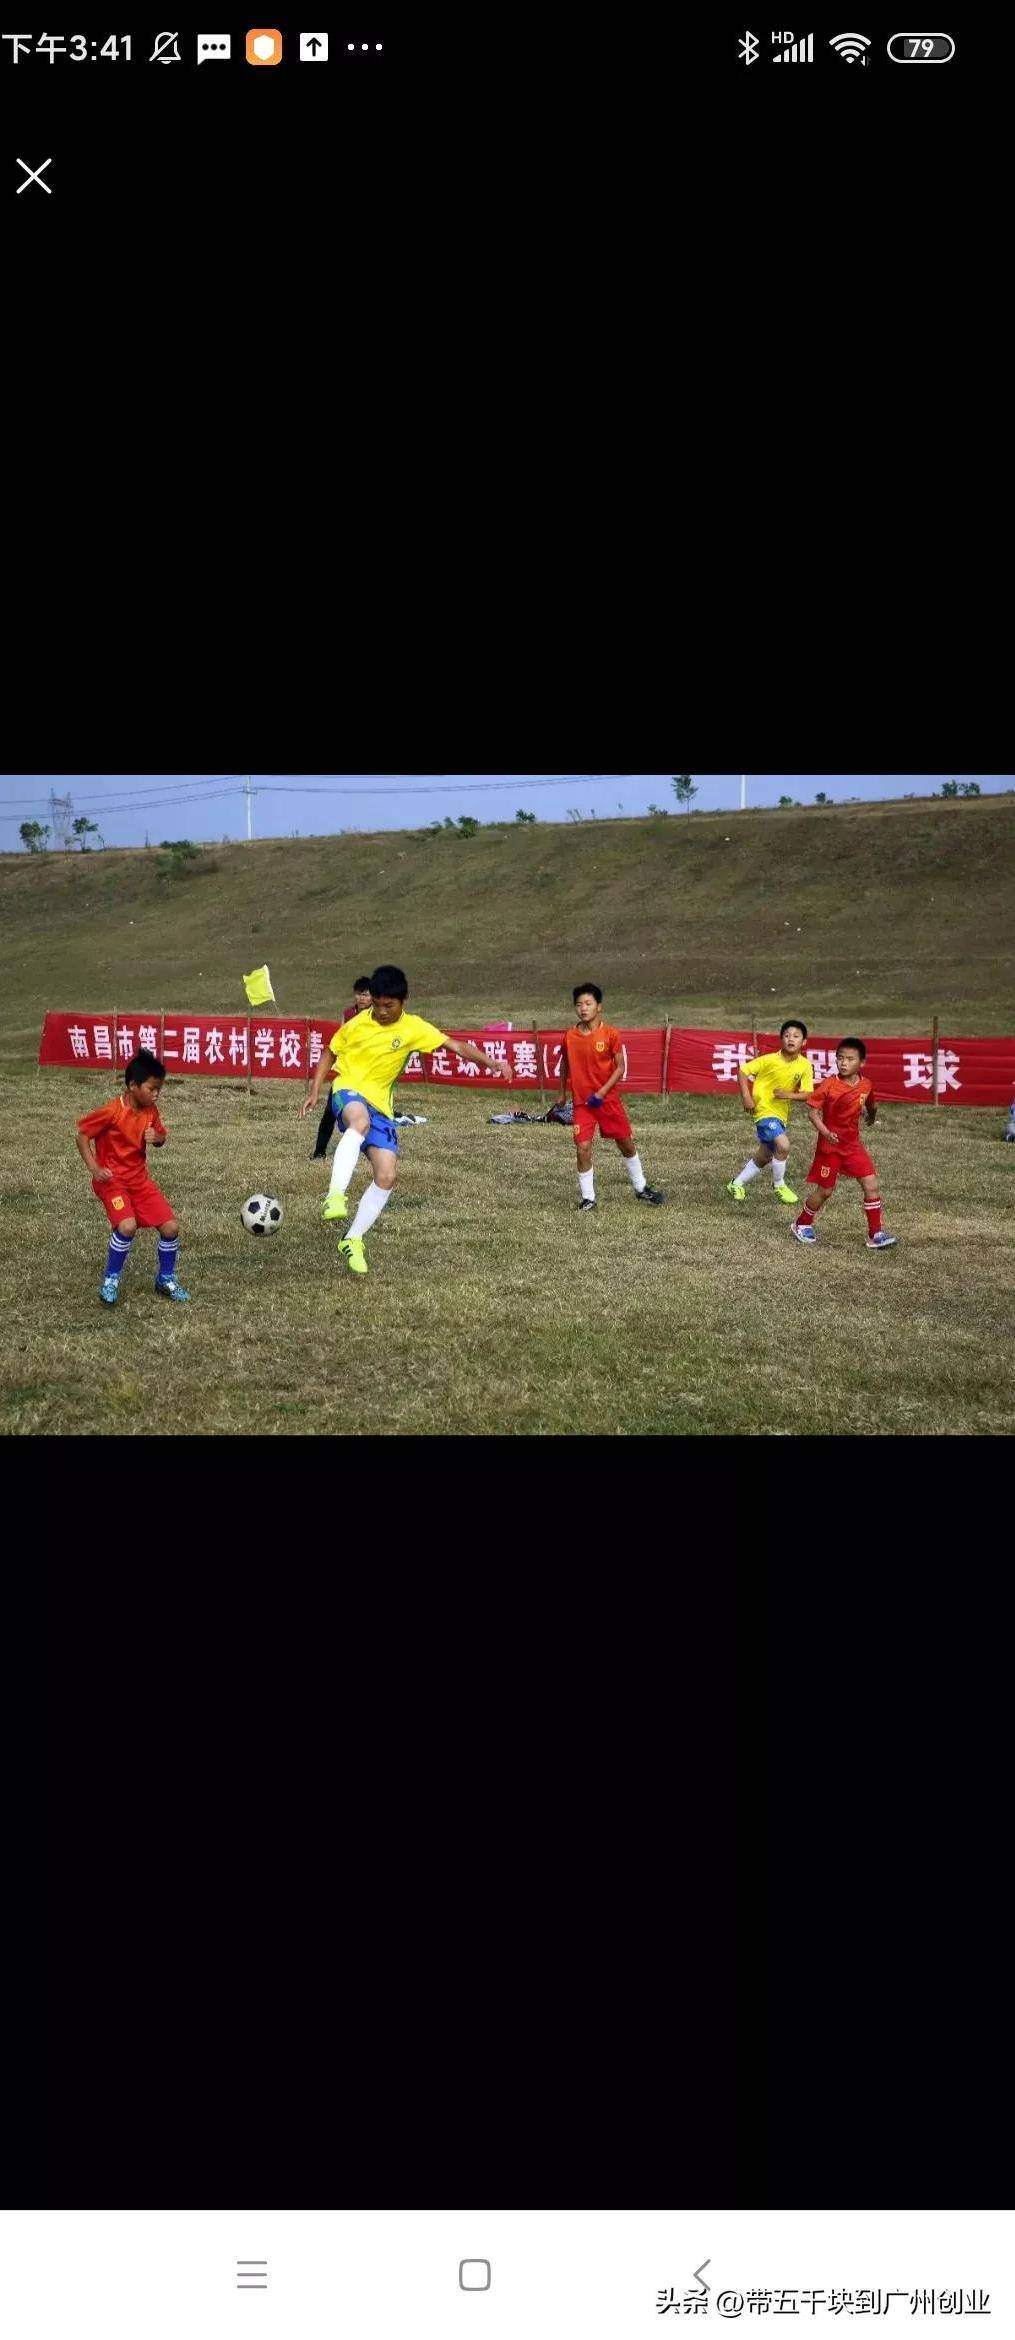 亚美体育APP|一个很全面的关于中国足球青少年培训的改革计划